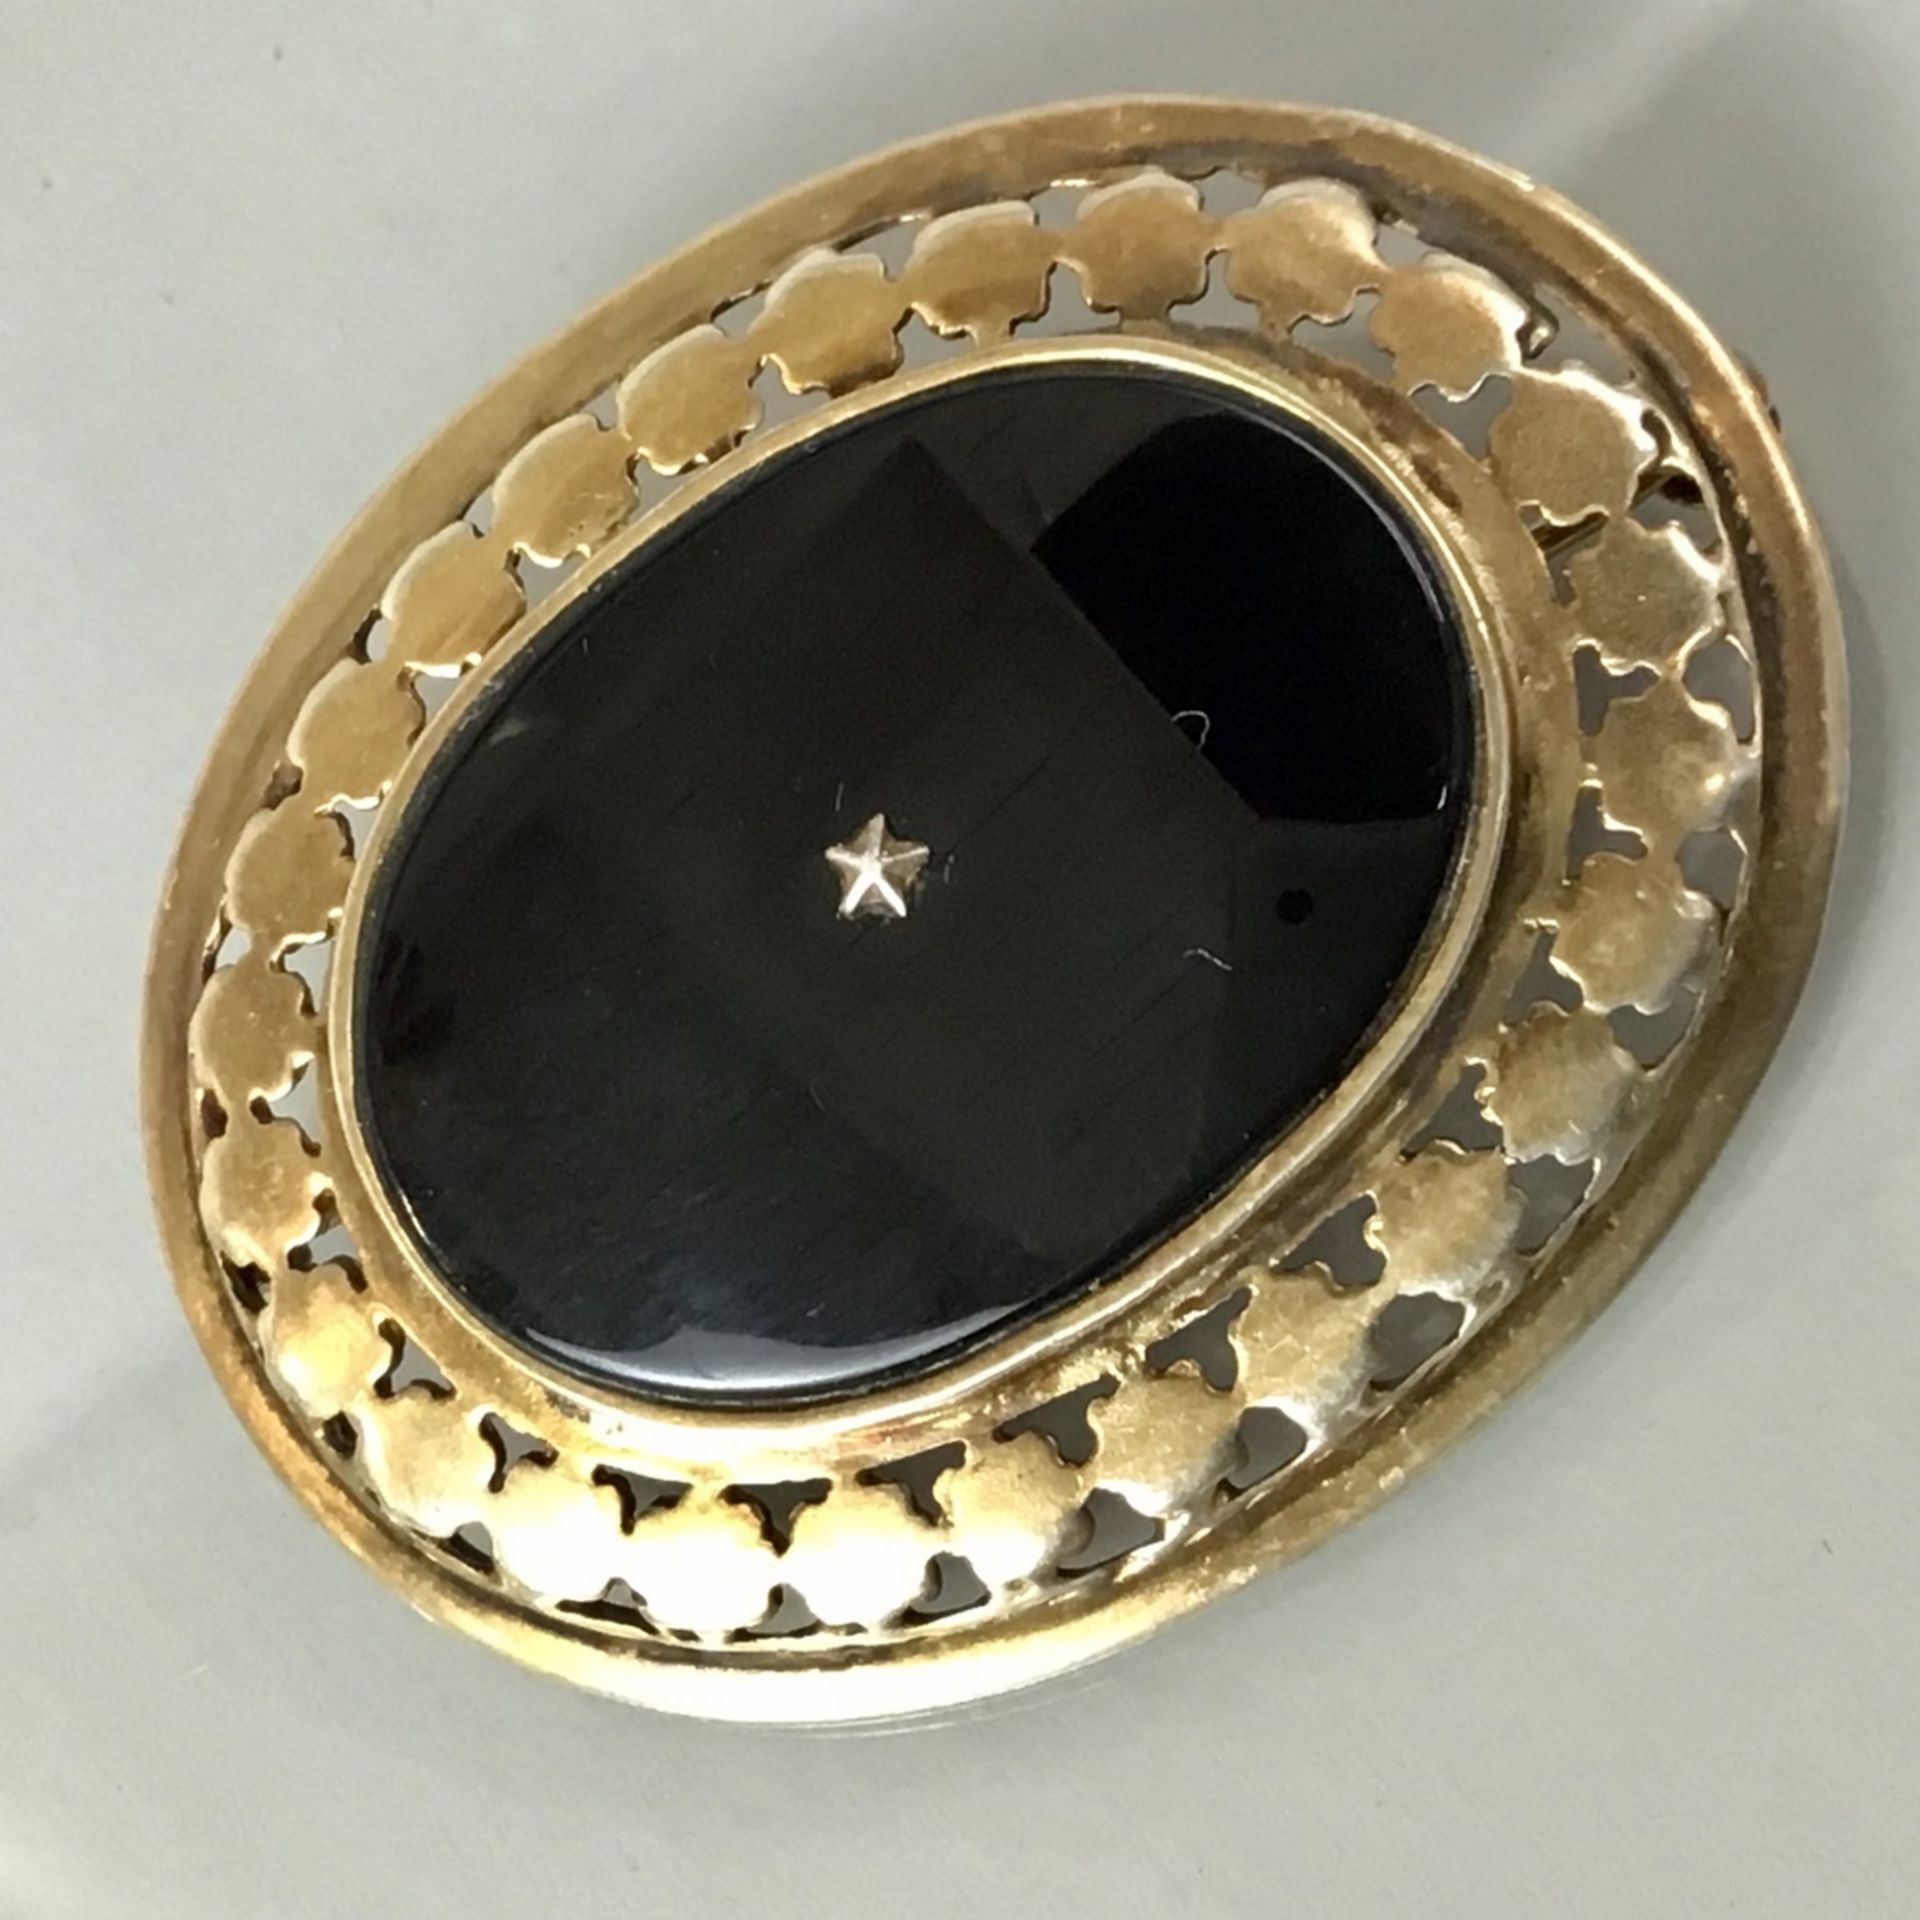 Onyx-Brosche, um 1900, Silber 925 punziert, vergoldet, Nadel mit Sicherheitsverschluss, 4,7 x 3,7